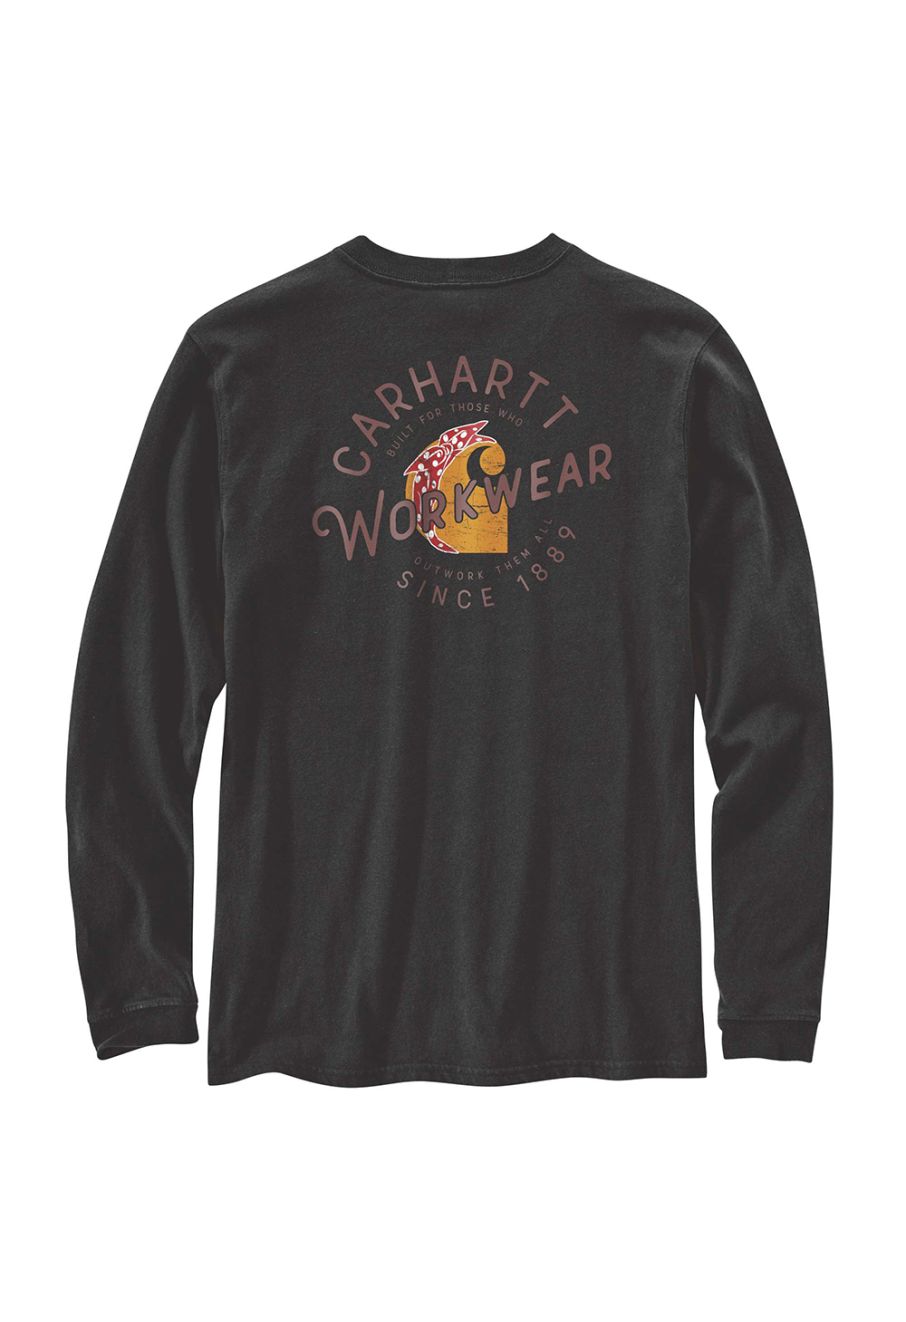 Carhartt Workwear Pocket Women's T-Shirt Black L